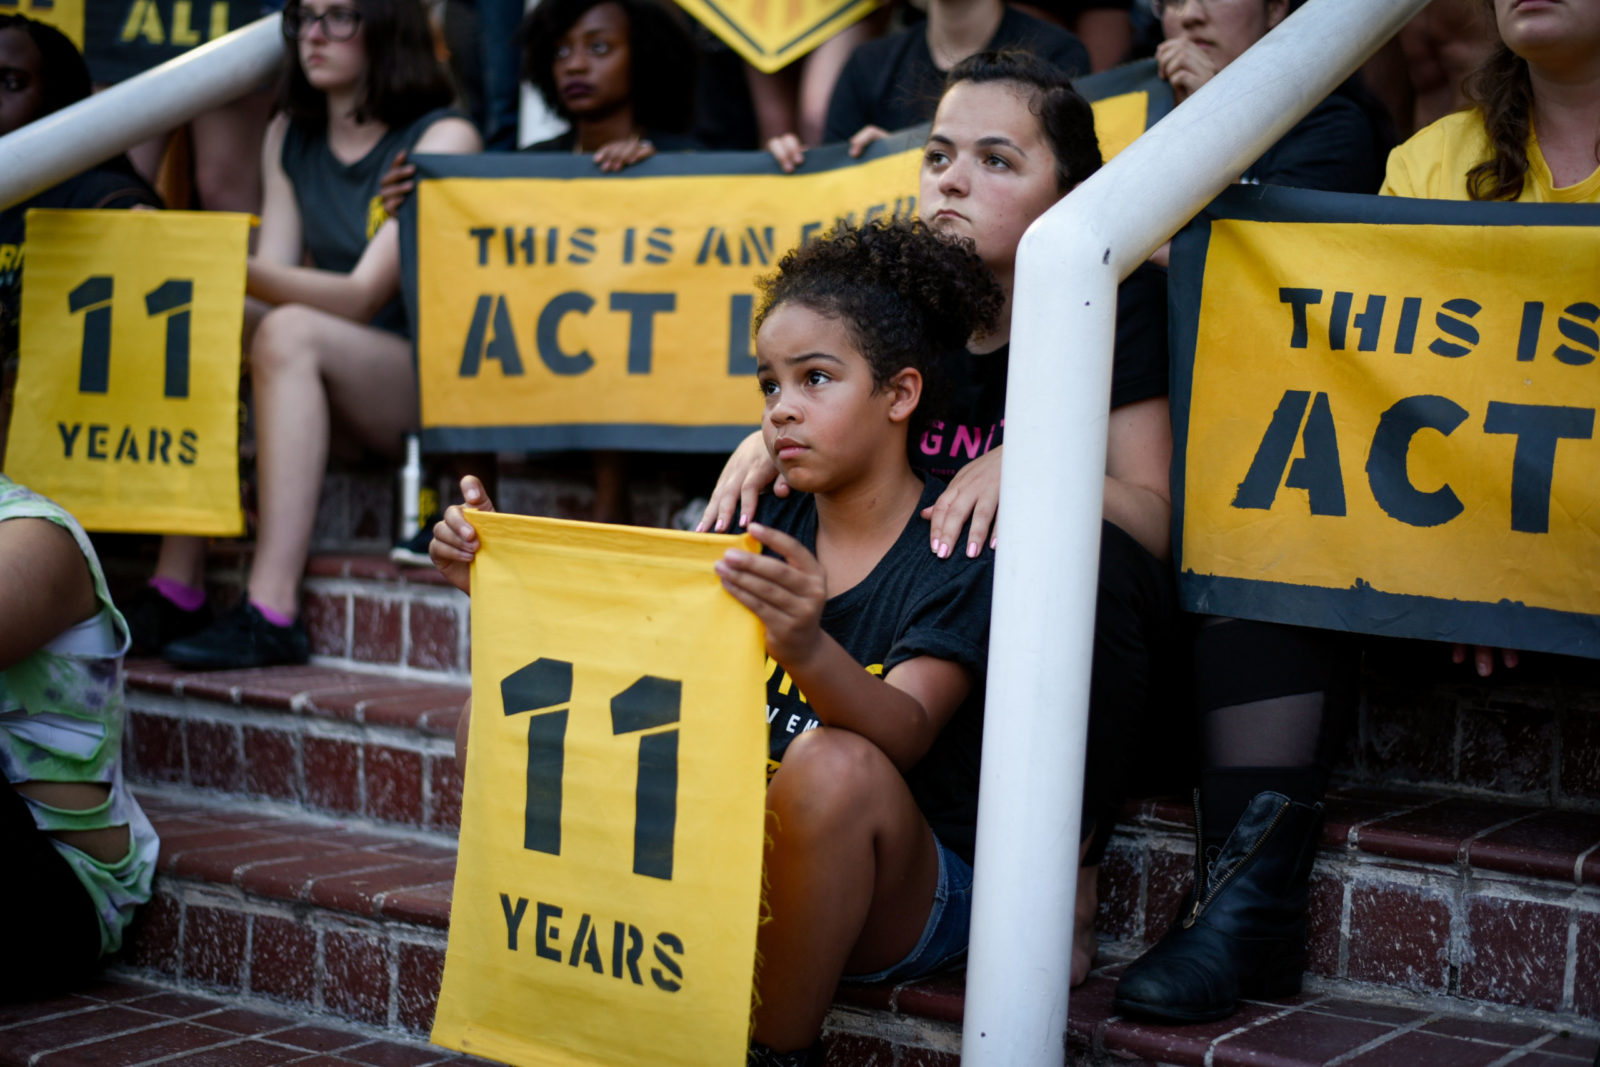 Un joven activista de Sunrise se sienta en las escaleras de la sede del DNC en DC, sosteniendo un cartel de "11 años". Está rodeada de compañeros activistas.